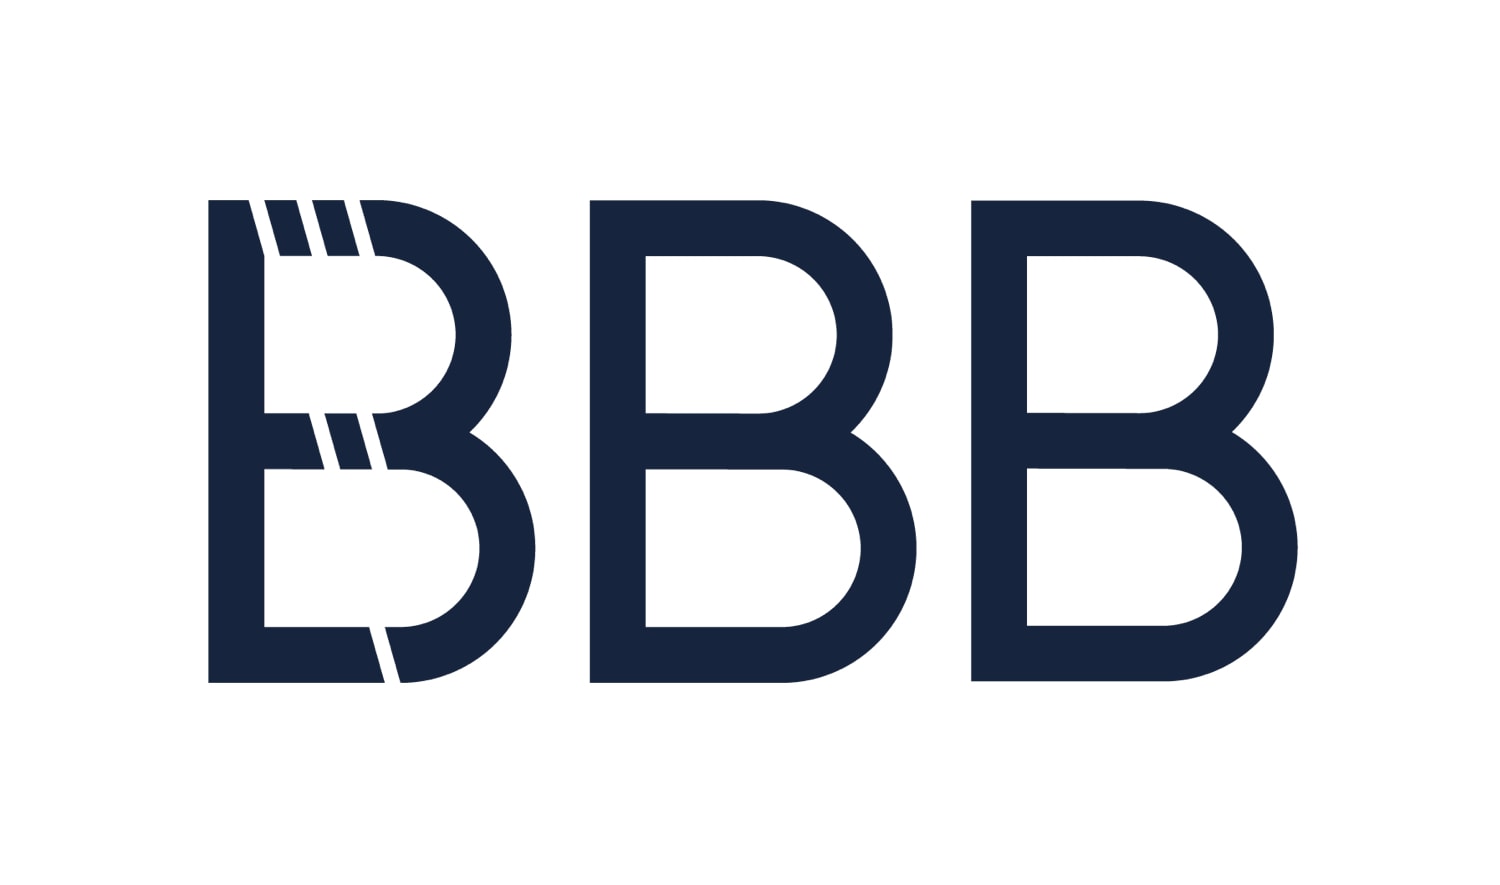 bbb cycling logo